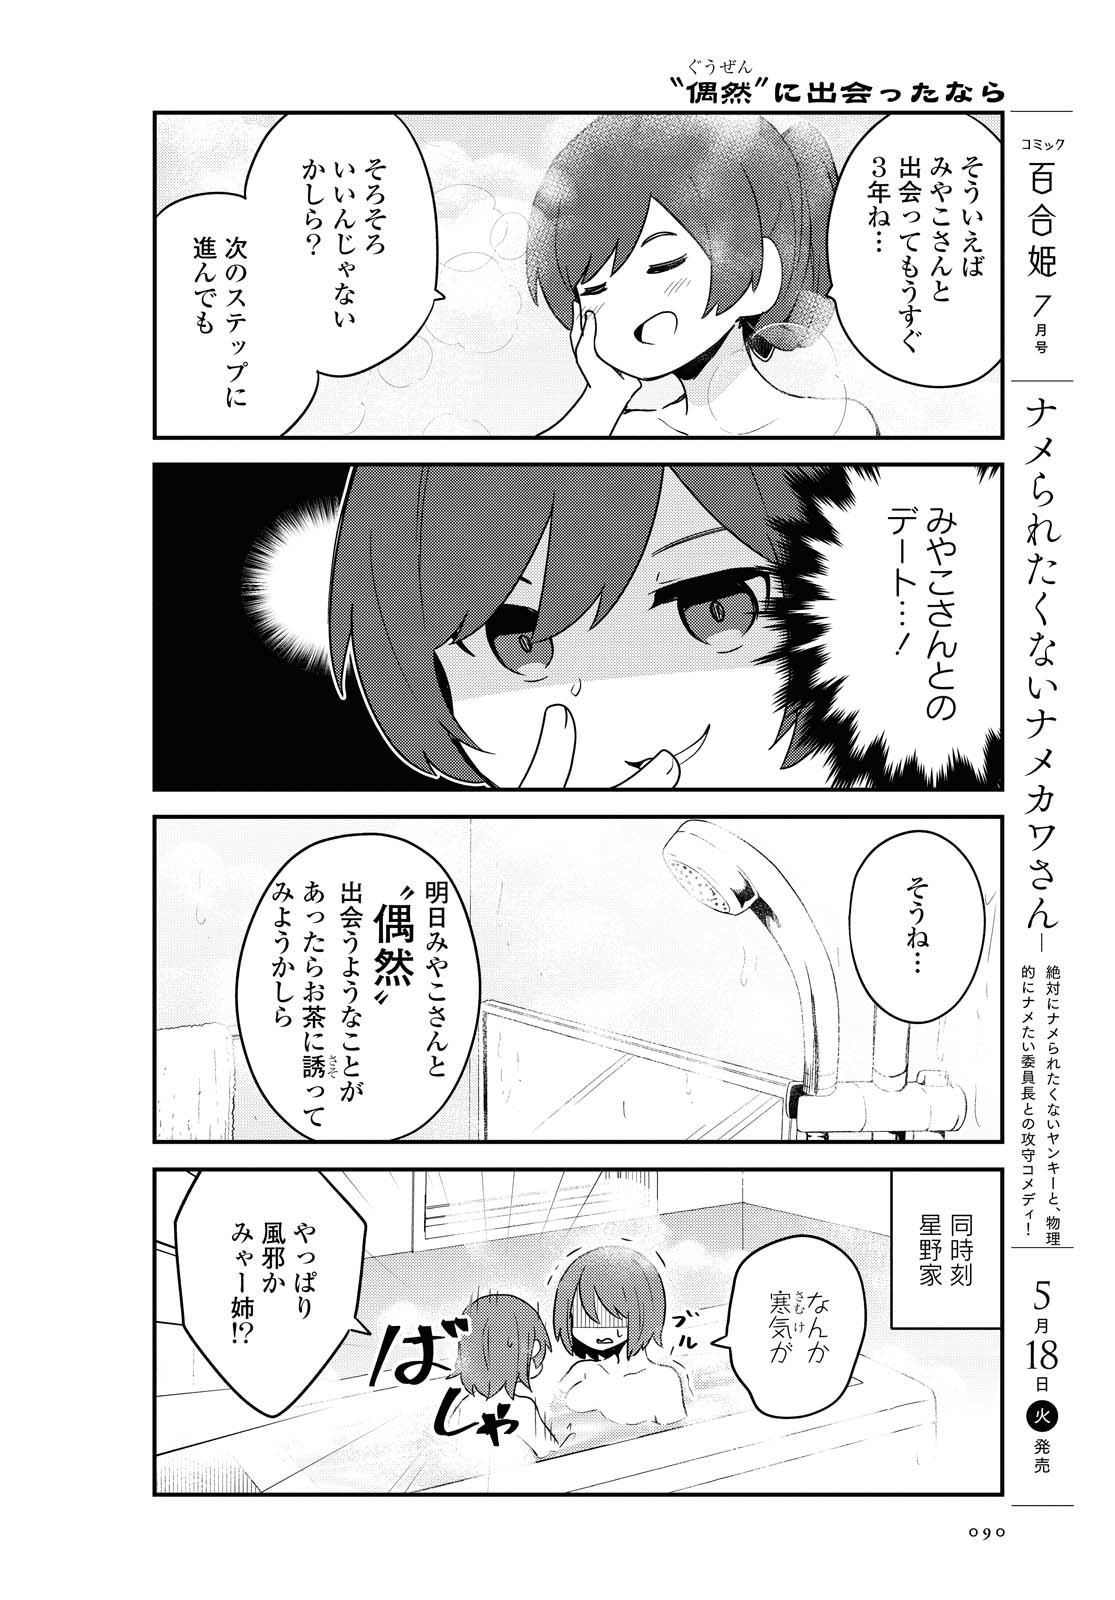 Watashi ni Tenshi ga Maiorita! - Chapter 82 - Page 2